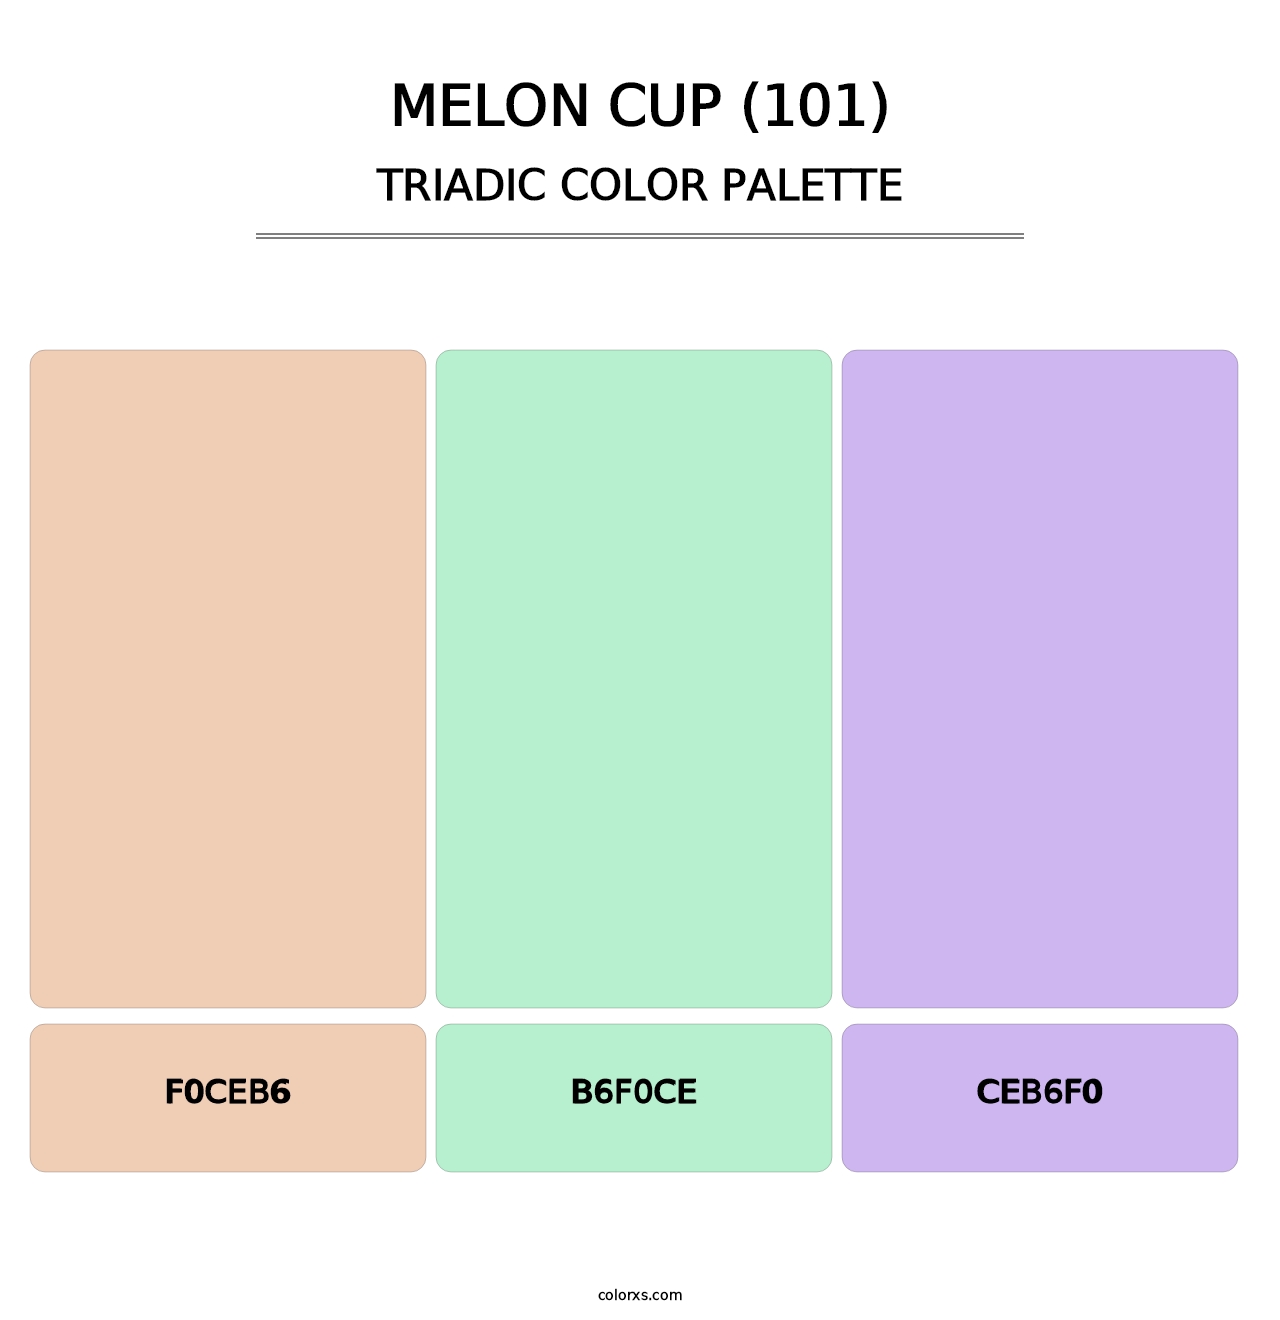 Melon Cup (101) - Triadic Color Palette